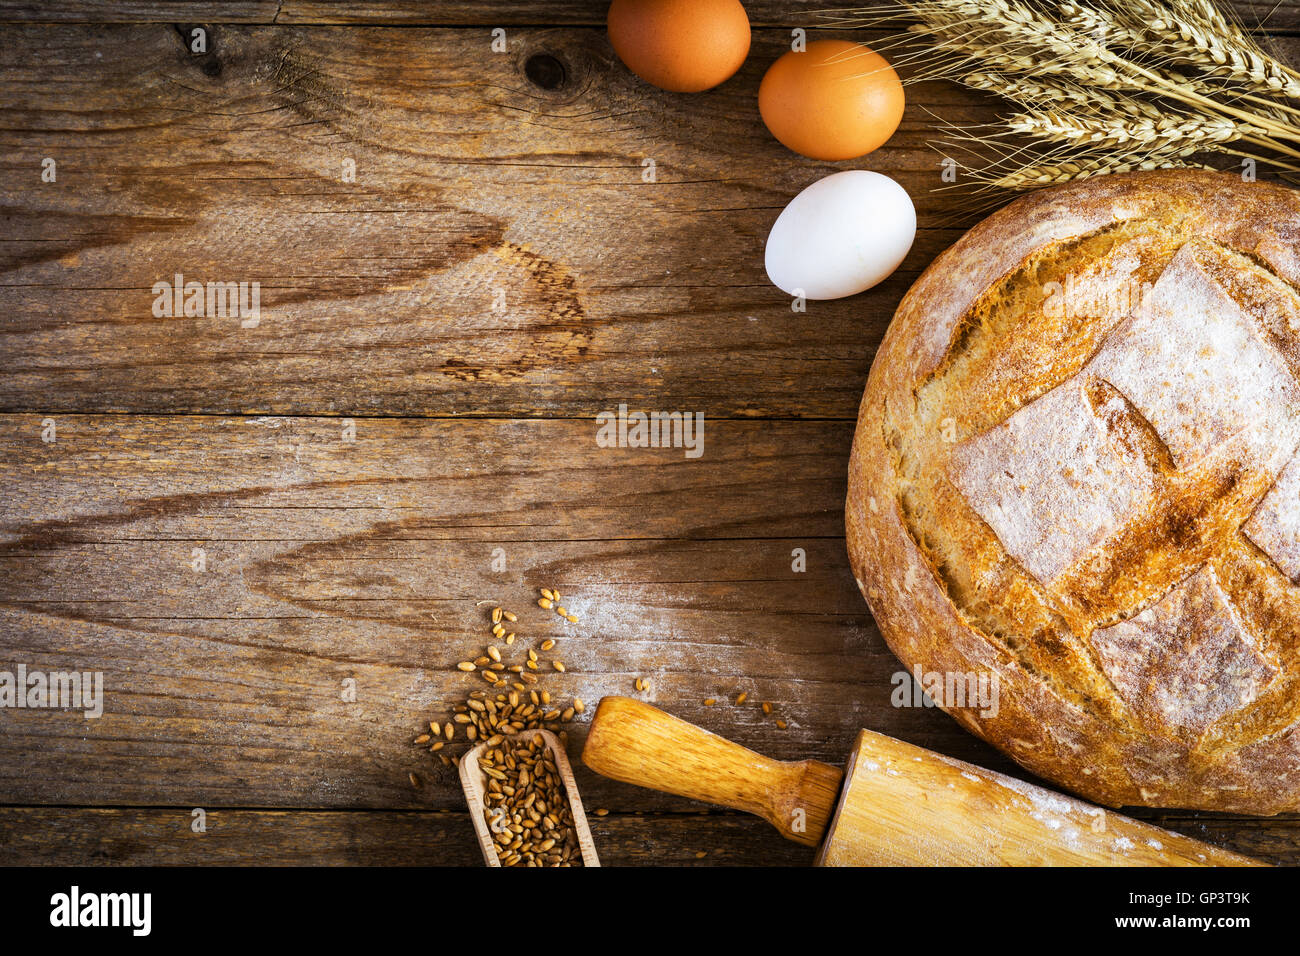 Brot, Spikes, Eiern und Weizen. Bäckerei, Backen Essen Landwirtschaft Hintergrund. Rustikalen Stil mit Textfreiraum. Stockfoto